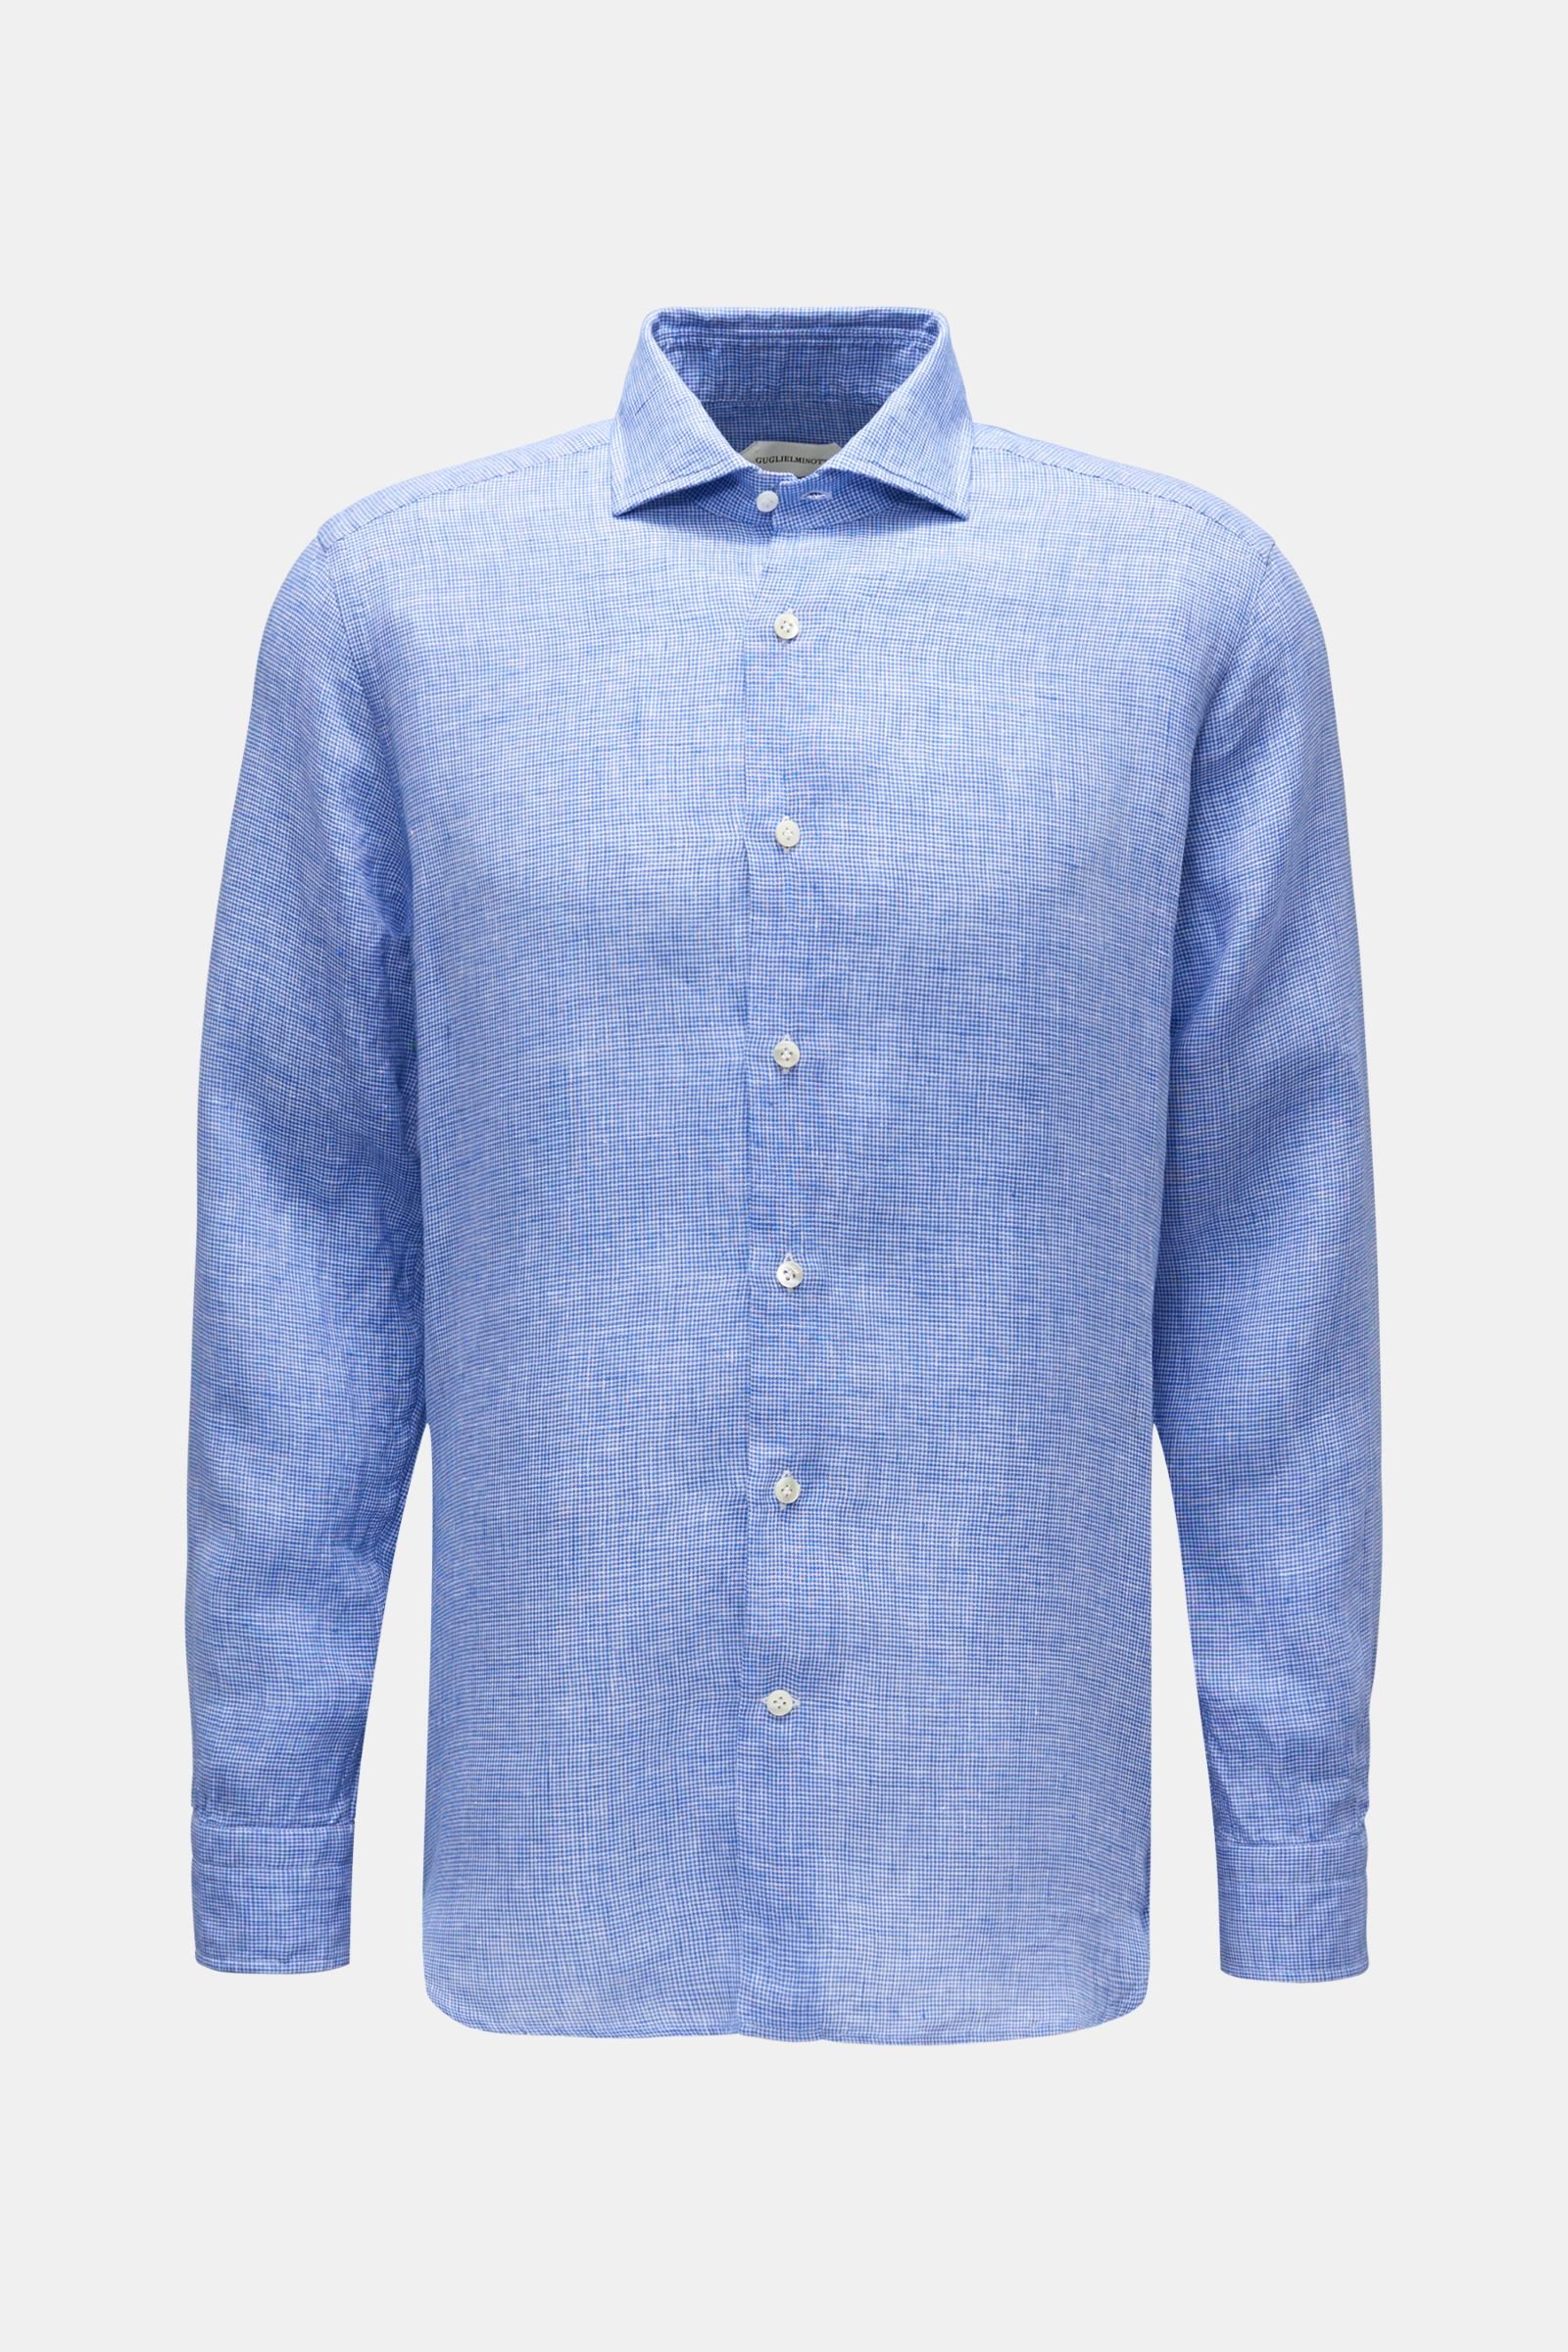 Linen shirt shark collar smoky blue/white checked